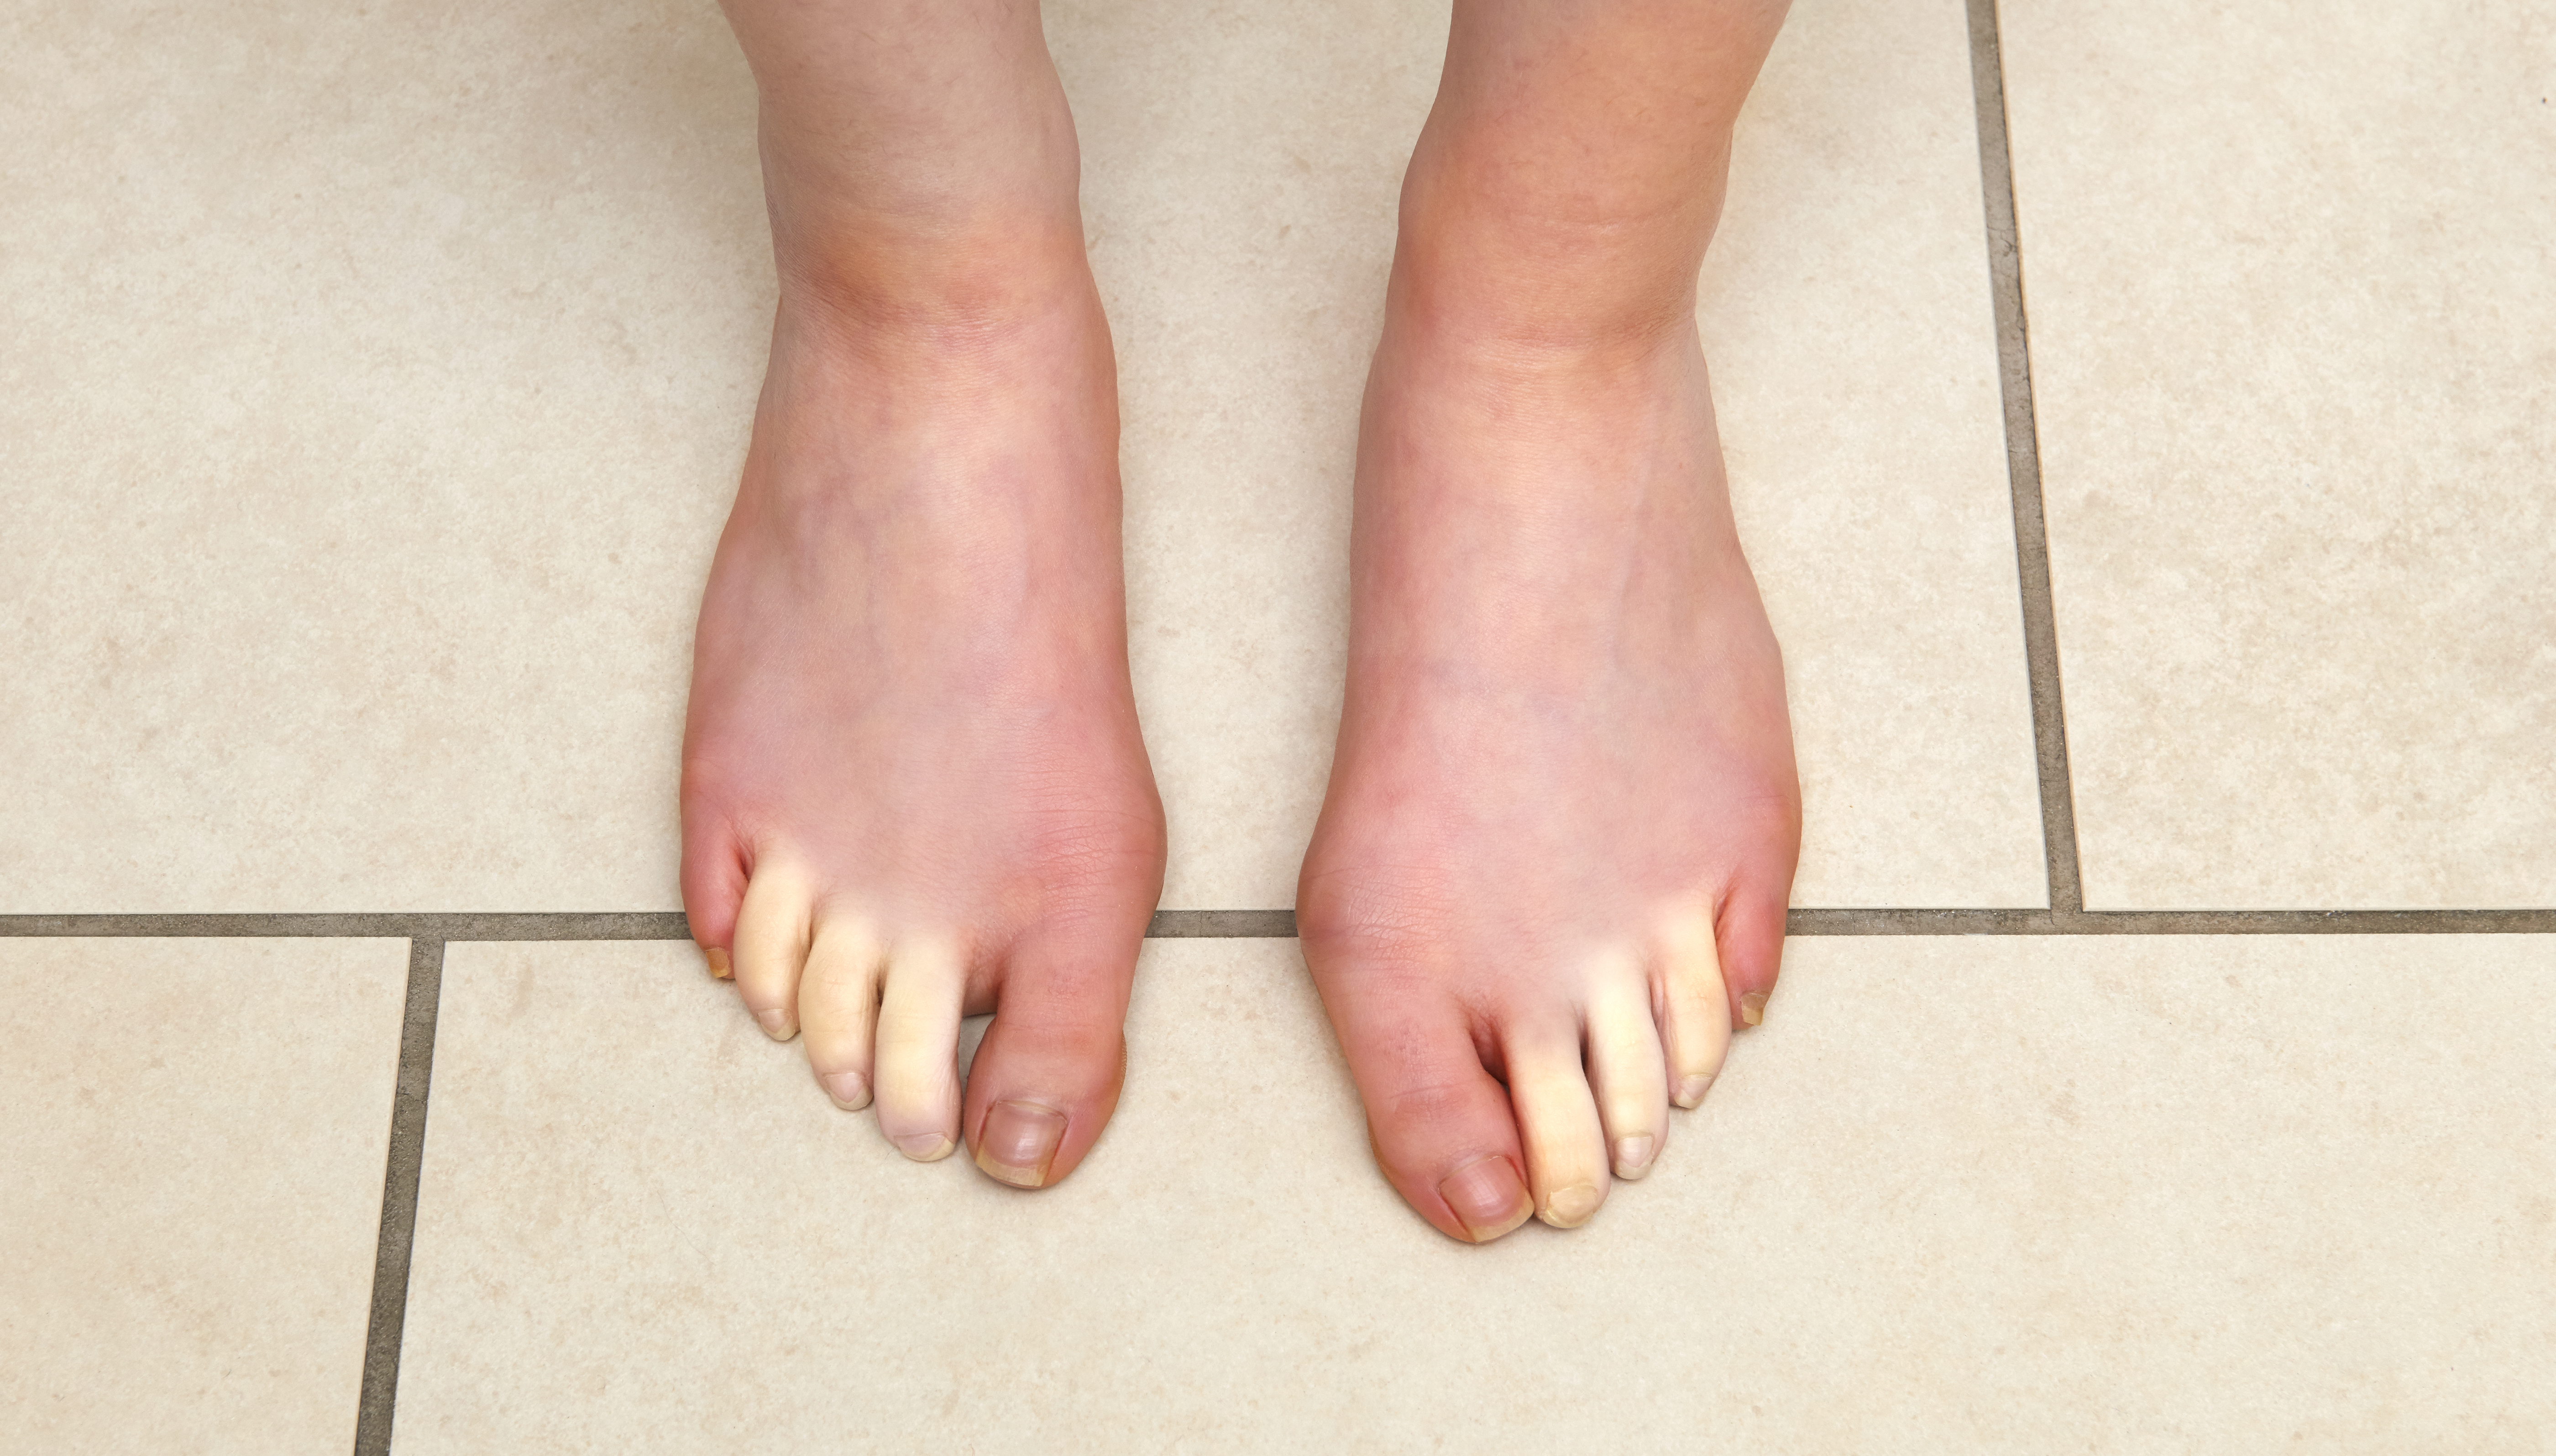 Señales y síntomas que pueden indicar mala circulación sanguínea en piernas  y pies